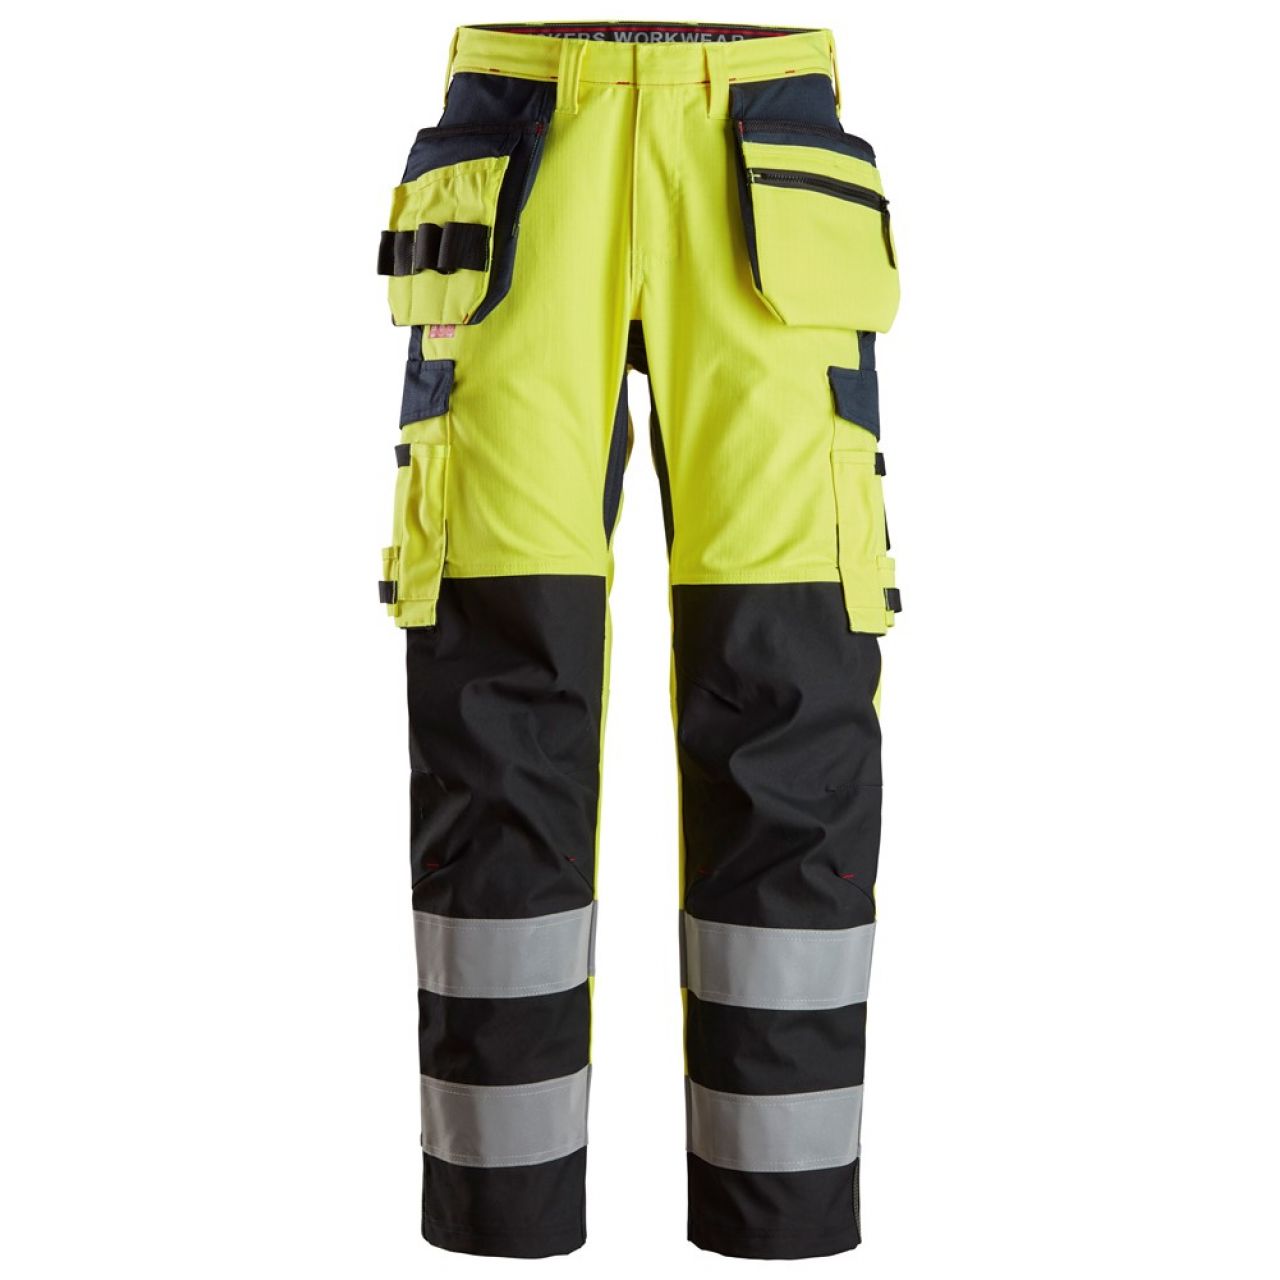 6264 Pantalones largos de trabajo de alta visibilidad clase 2 con bolsillos flotantes y espinilla reforzada ProtecWork amarillo-azul marino talla 62